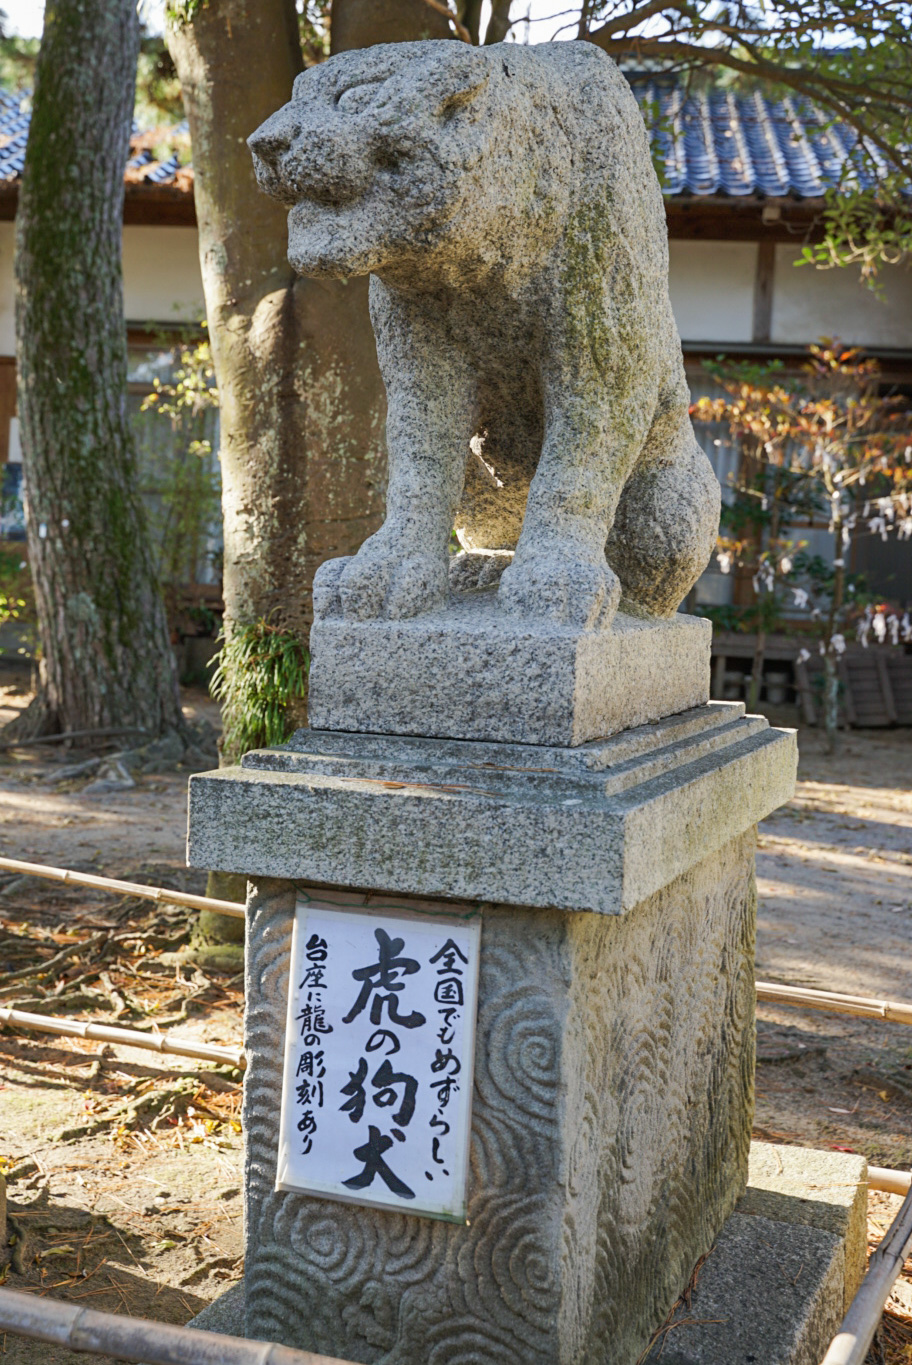 全国でも珍しい虎の狛犬が鎮座しているため、プロ野球・阪神タイガースファンもお詣りされるとか。